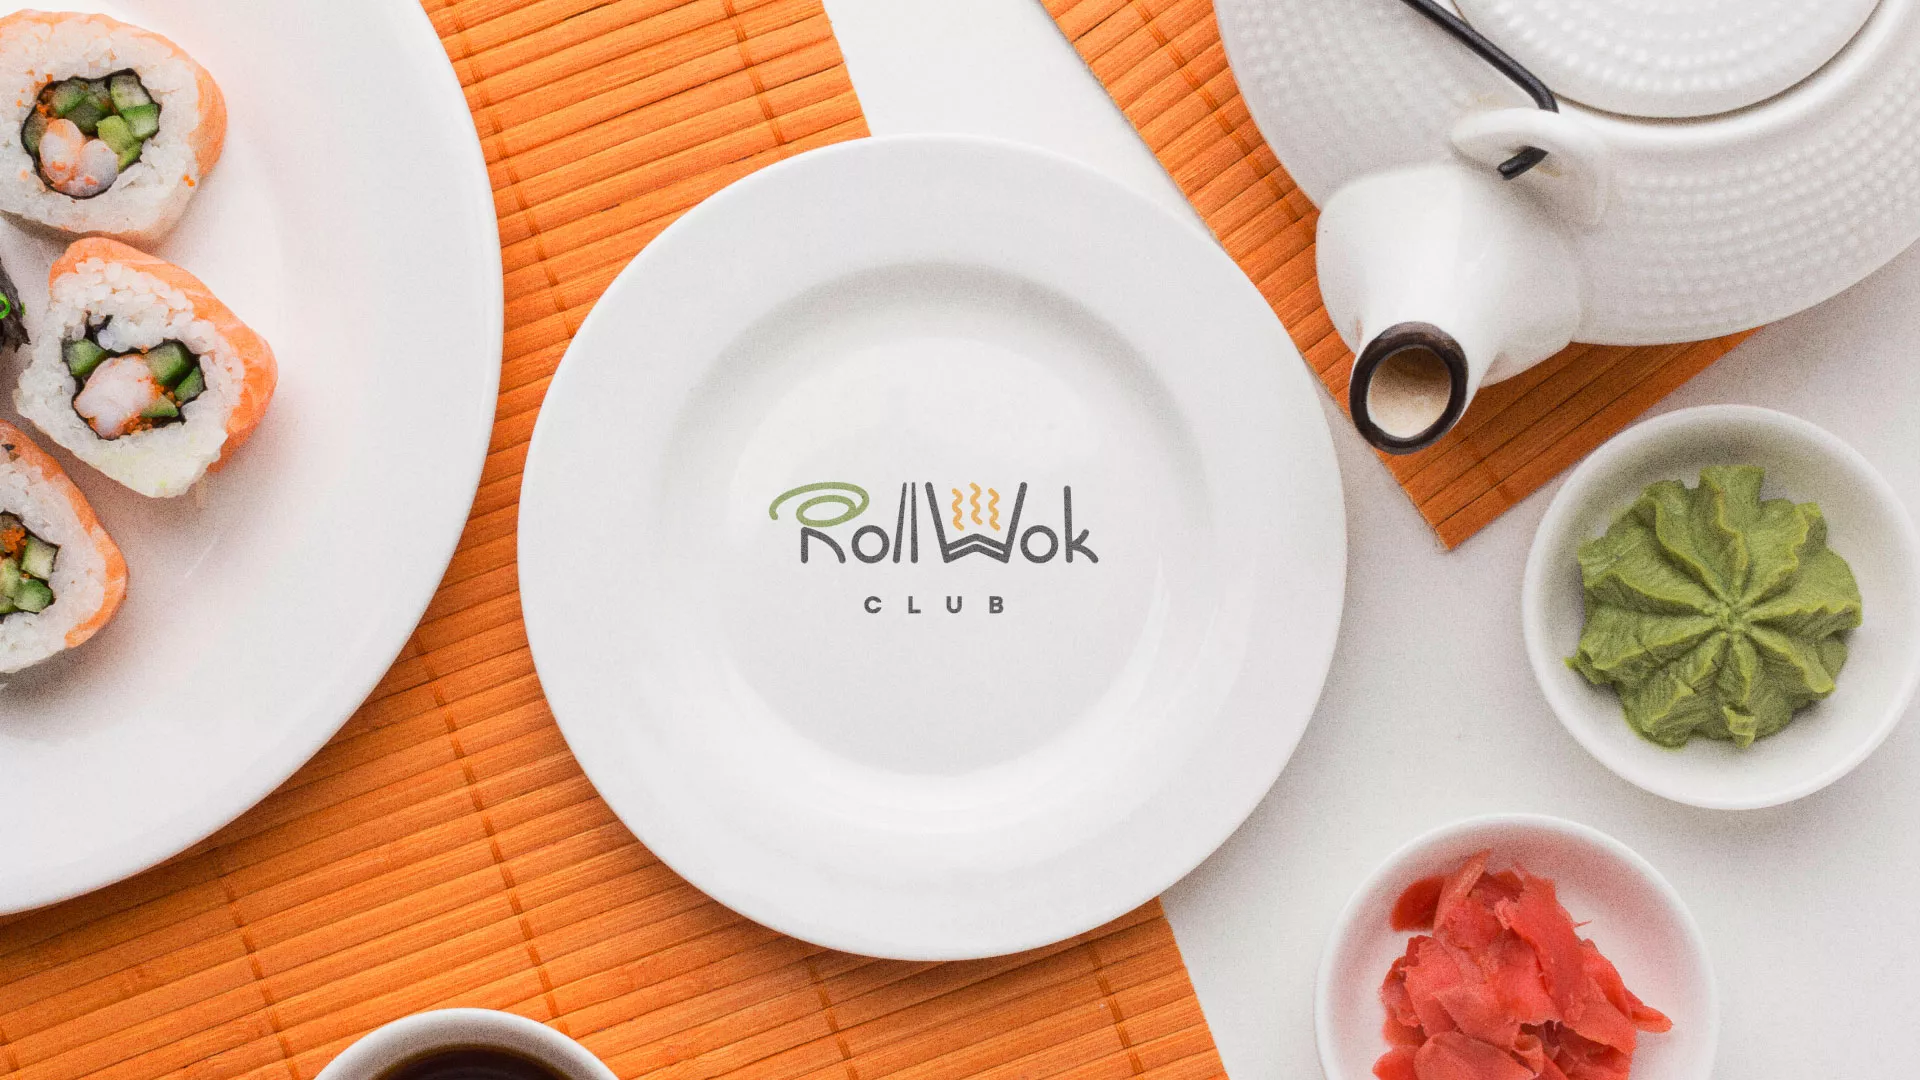 Разработка логотипа и фирменного стиля суши-бара «Roll Wok Club» в Пошехонье